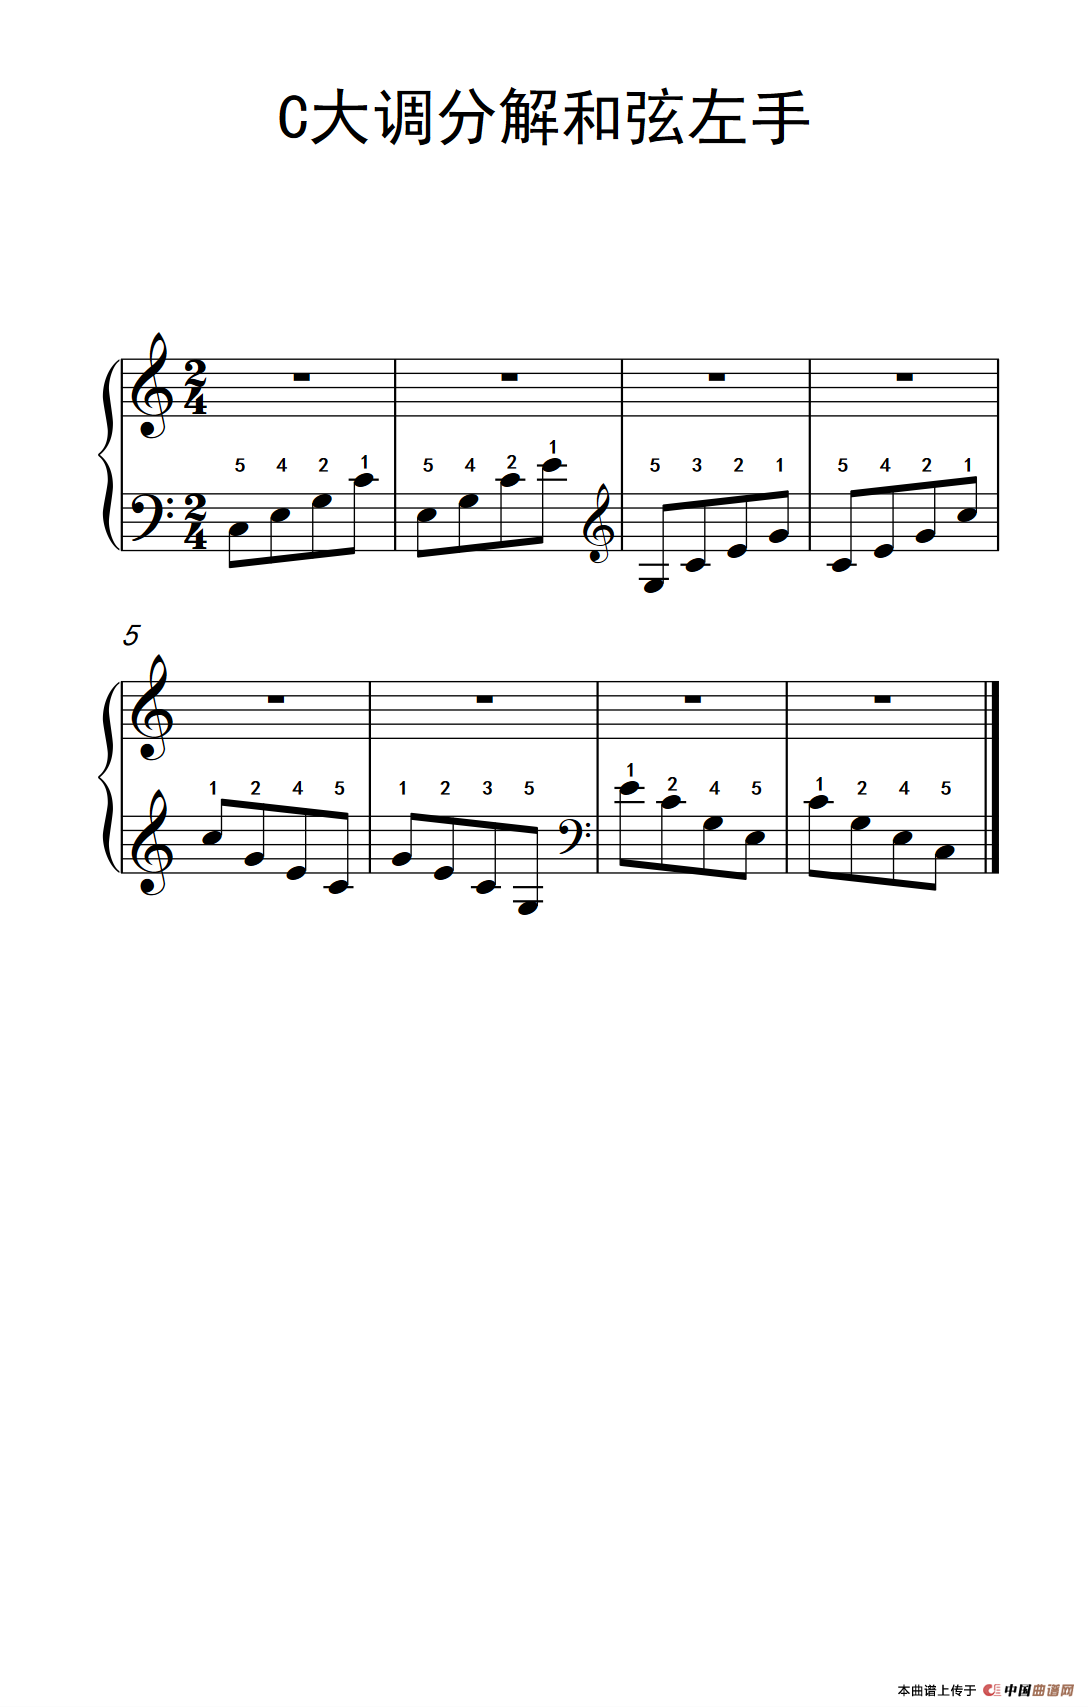 第二级1.C大调分解和弦左手_钢琴谱_曲谱库